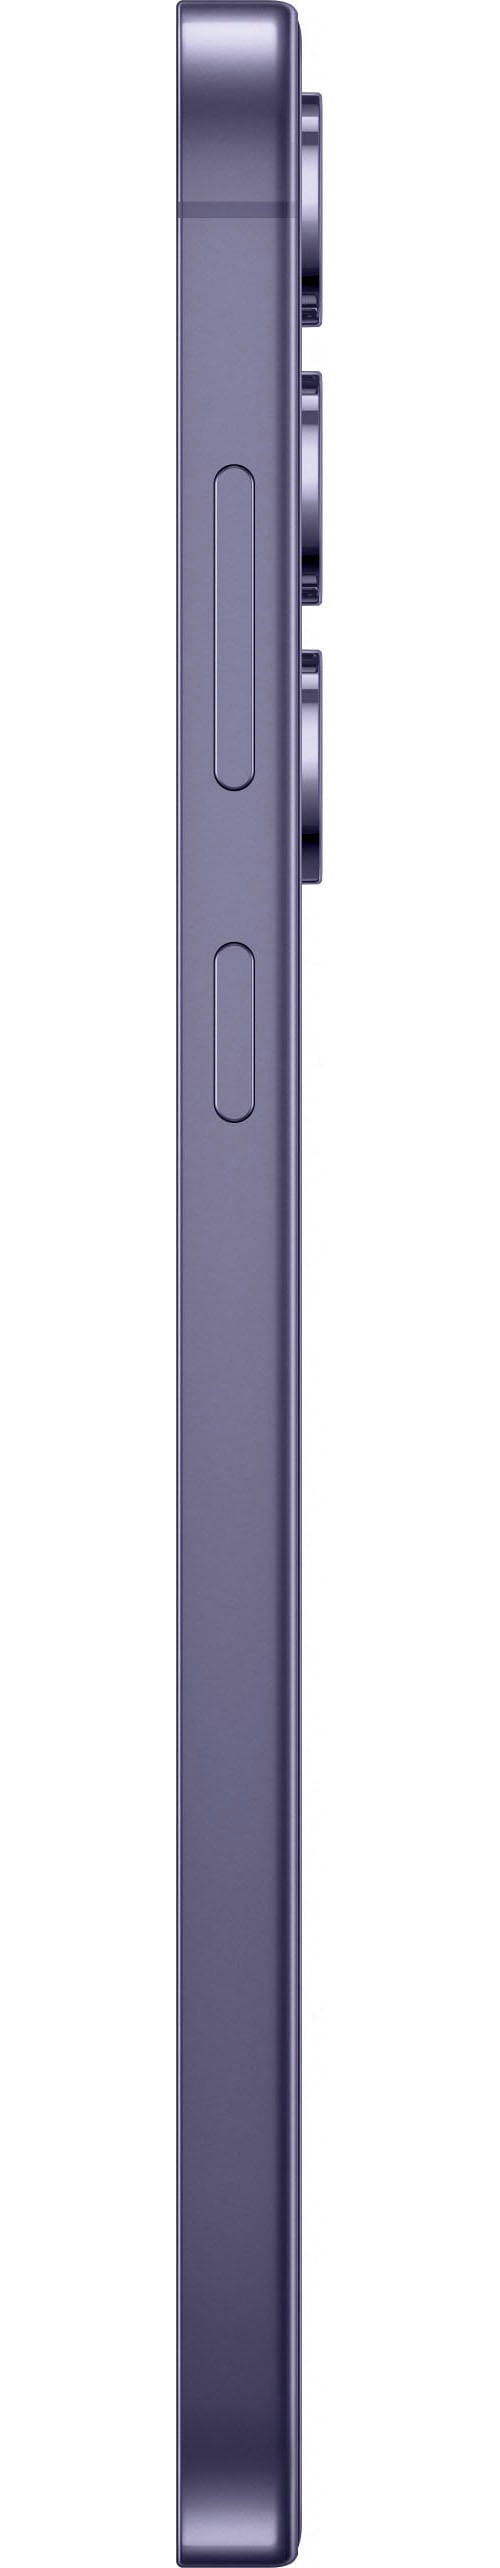 Samsung Smartphone »Galaxy S24+ 256GB«, cobalt violet, 16,91 cm/6,7 Zoll, 256 GB Speicherplatz, 50 MP Kamera, AI-Funktionen